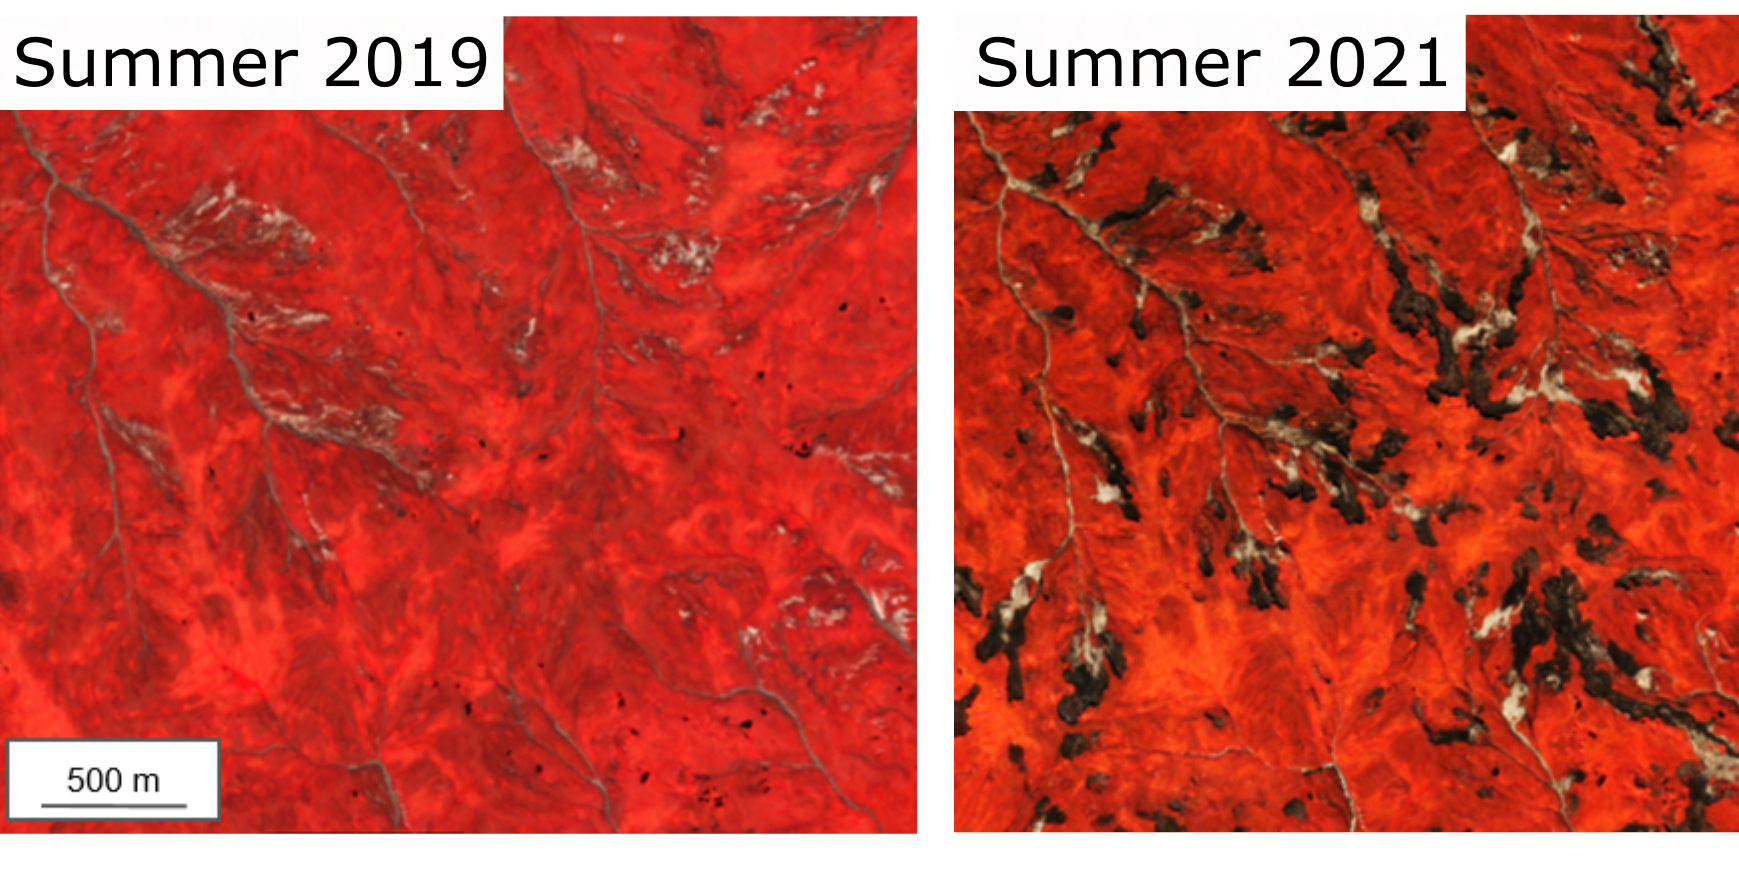 Zwei Satellitenbilder im Vergleich. Links vom Sommer 2019, das beinahe komplett rot ist, was viel Vegetation darstellt. Rechts ist ein Foto vom Sommer 2021, das viele dunkle Flecken zeigt, die für Sümpfe stehen.